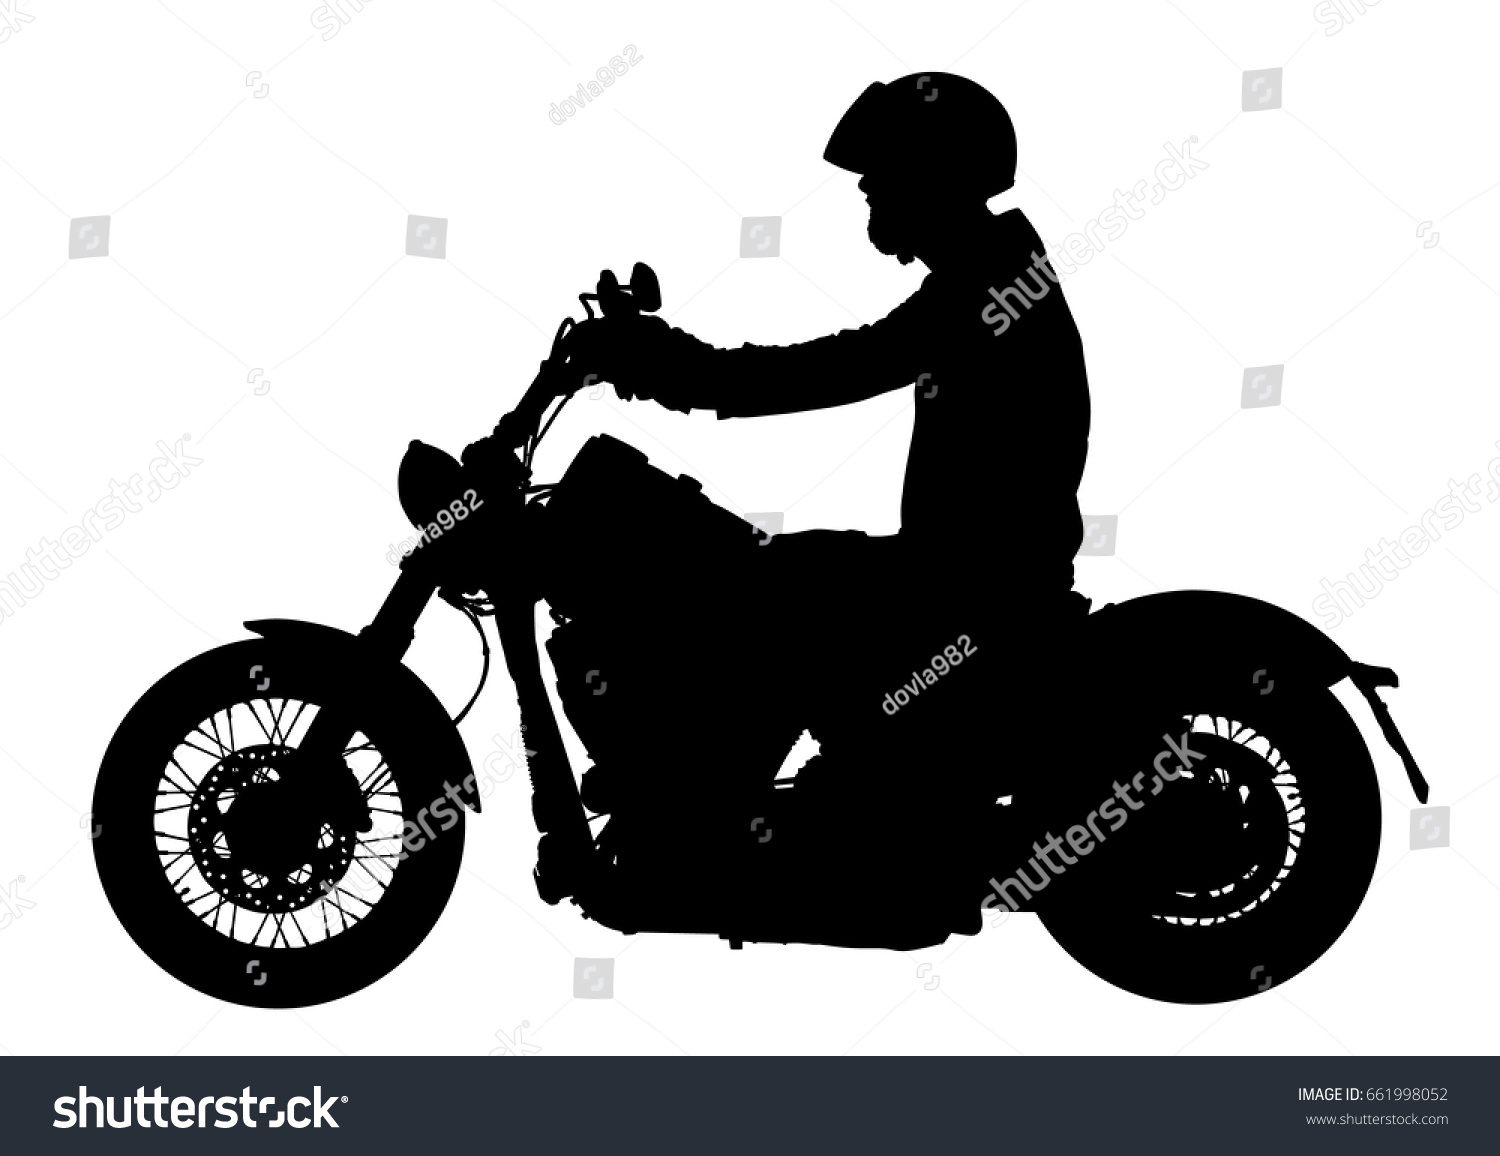 バイクを運転するバイカーは アスファルトの道路ベクターシルエットイラストに沿って走ります 自由活動 自転車での道のり バイクのシルエット を持つ男性 ボーイバイクライダー 自由の独立性 のベクター画像素材 ロイヤリティフリー